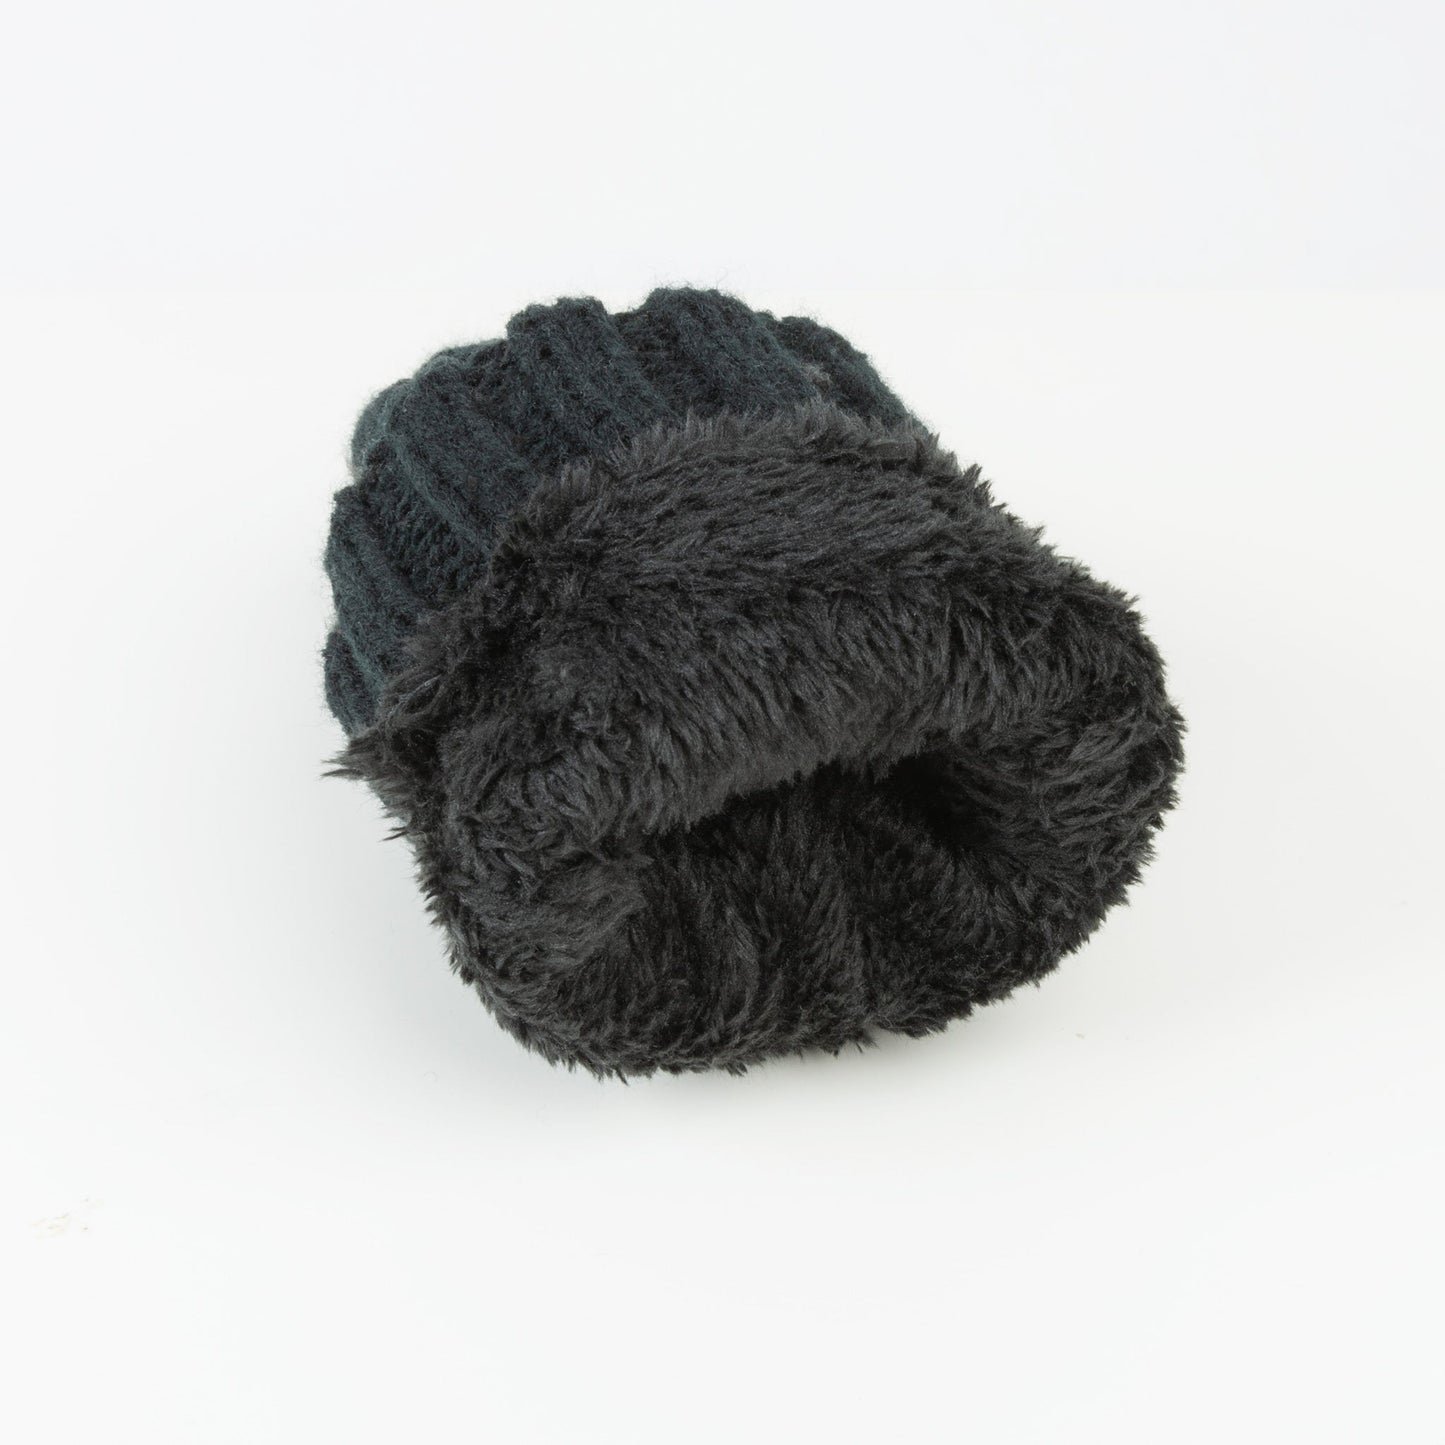 Howard's Women's Winter Sierra Cable Knit Mittens